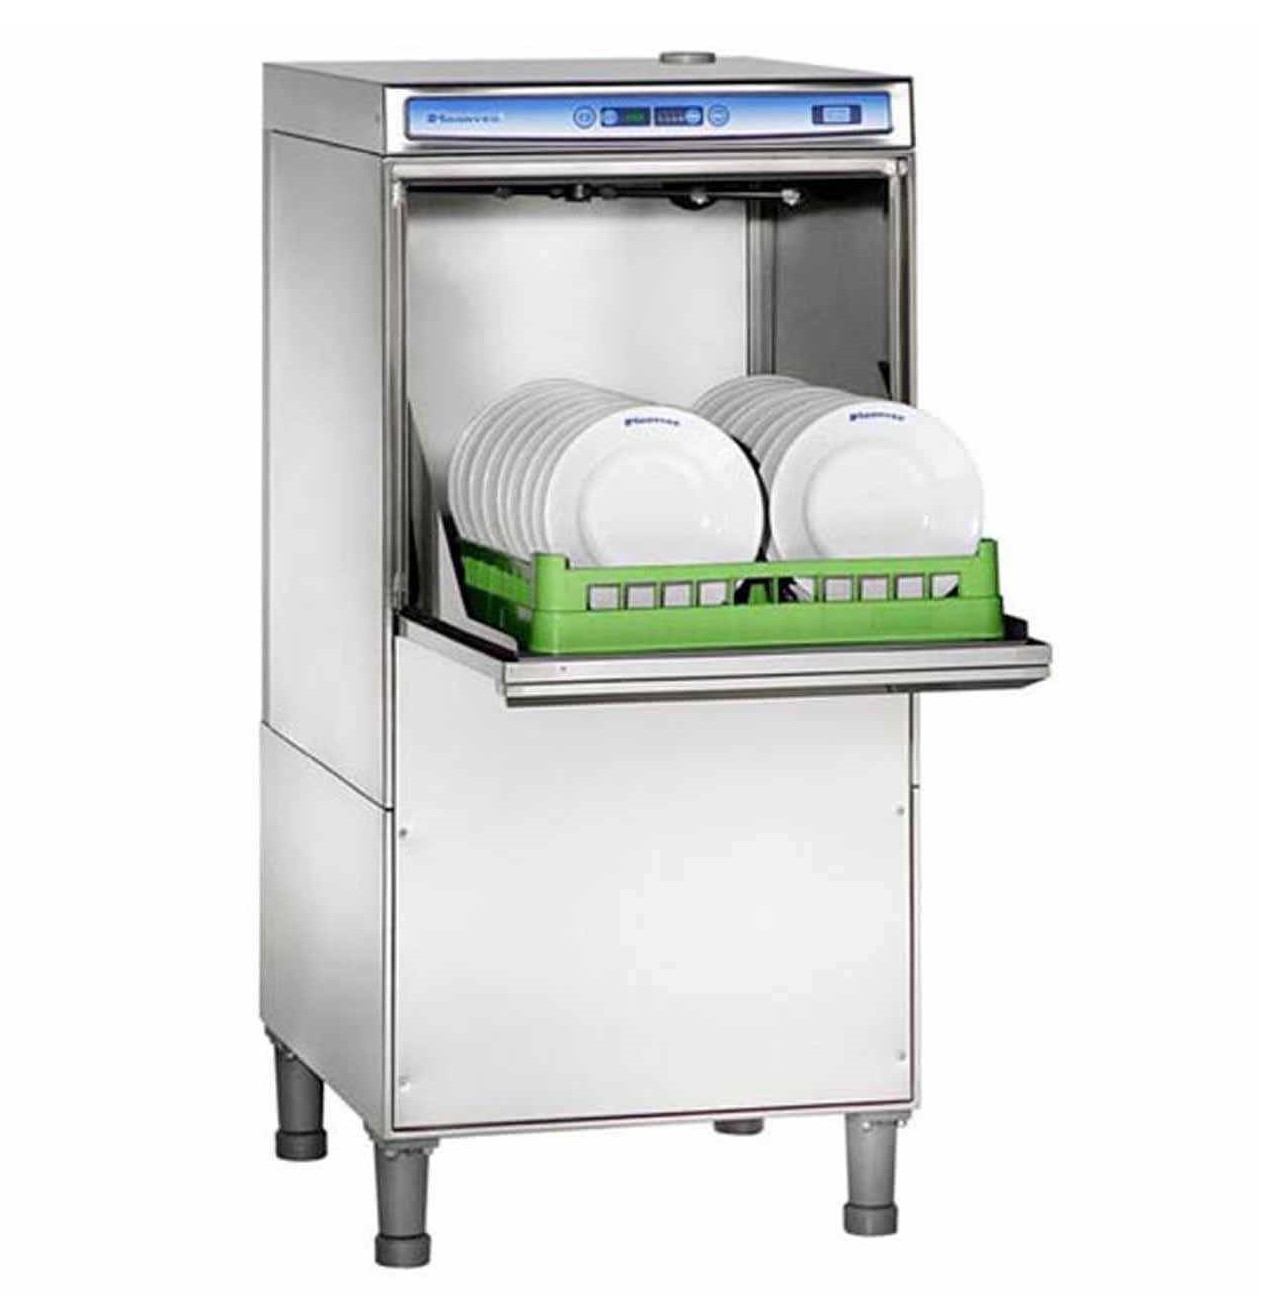 Посудомоечная машина для столовой. Luxia t50e фронтальная посудомоечная машина. Посудомоечная машина аббат фронтальная. Моечная машина для клеток ehoonved hd130 BT. Посудомоечная машина с фронтальной загрузкой Apach af500.